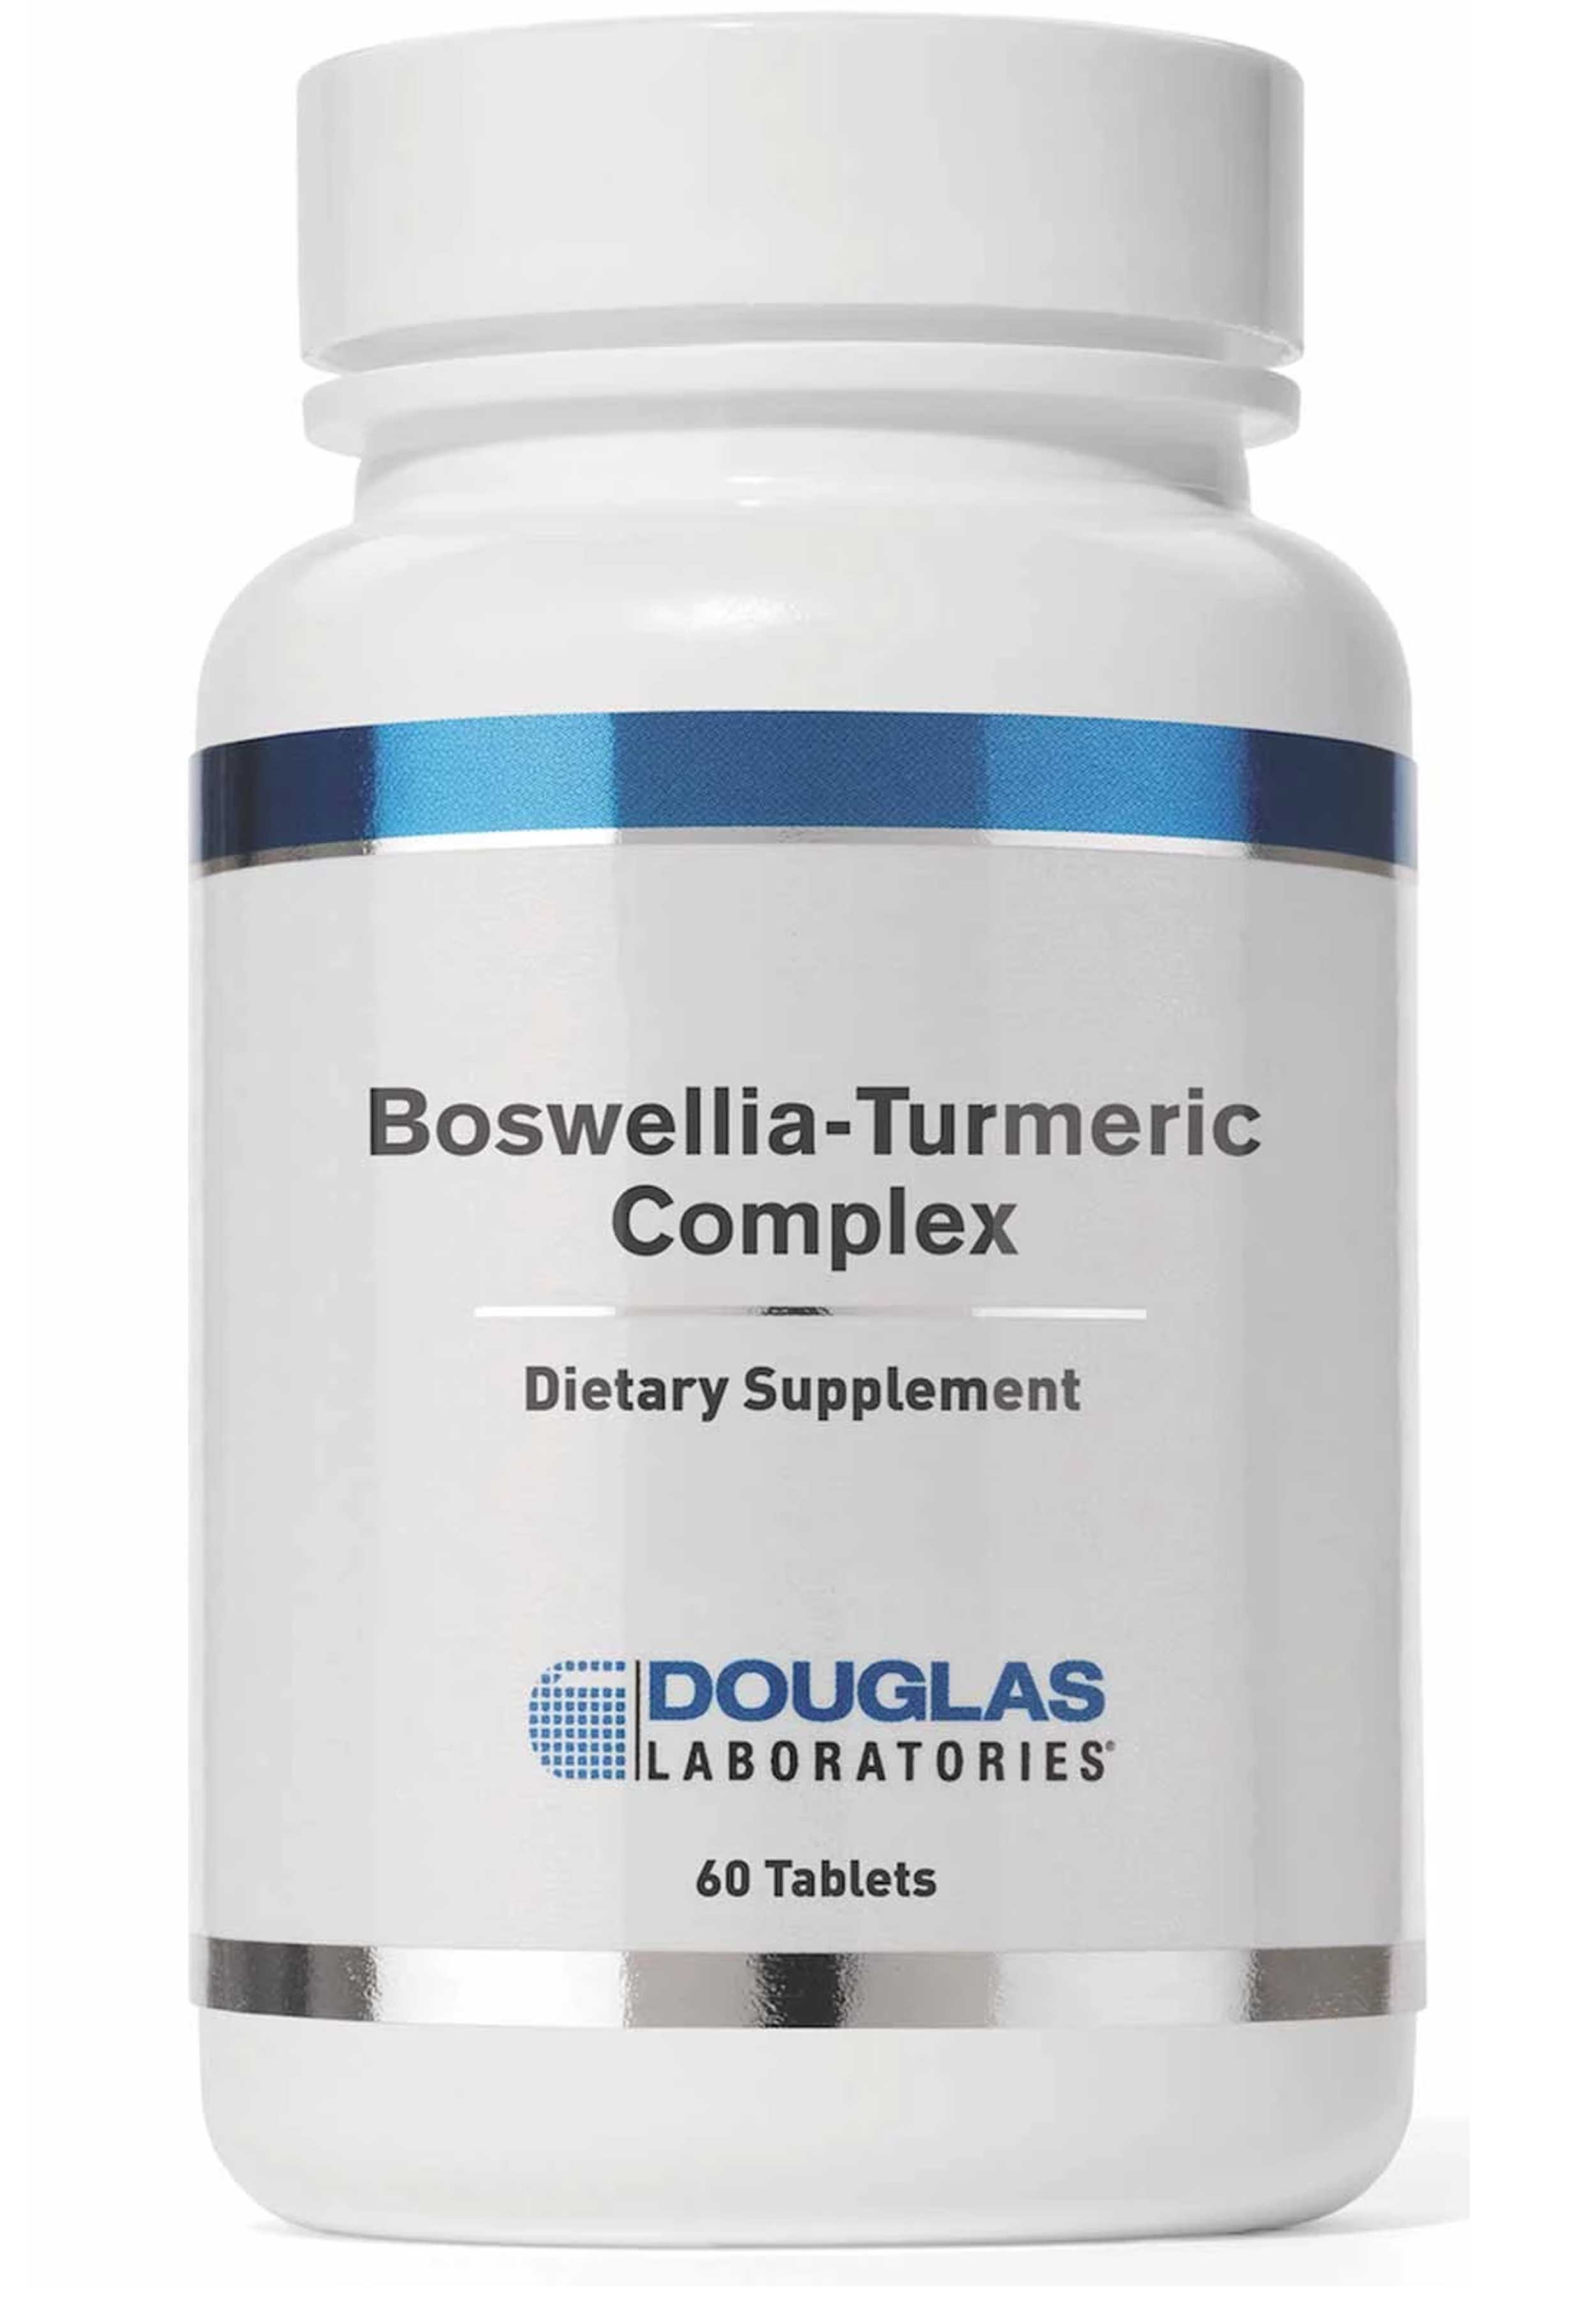 Douglas Laboratories Boswellia-Turmeric Complex